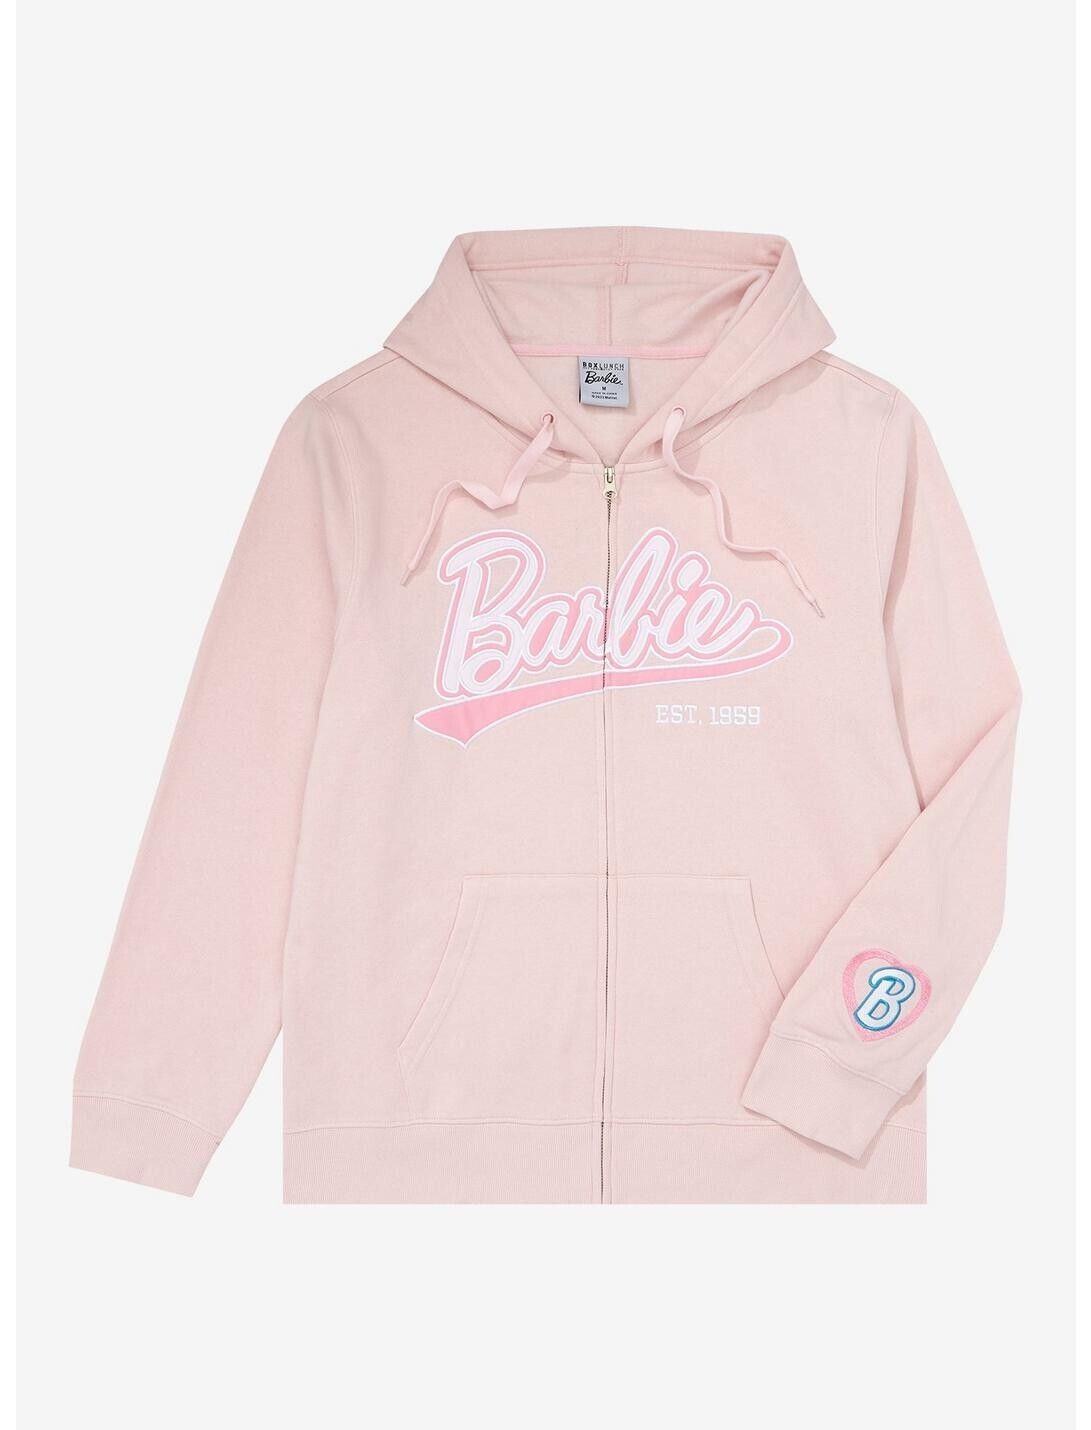 Barbie Full Zip Hoodie Jacket Soft Pink Raised Barbie Script Unisex Size Medium